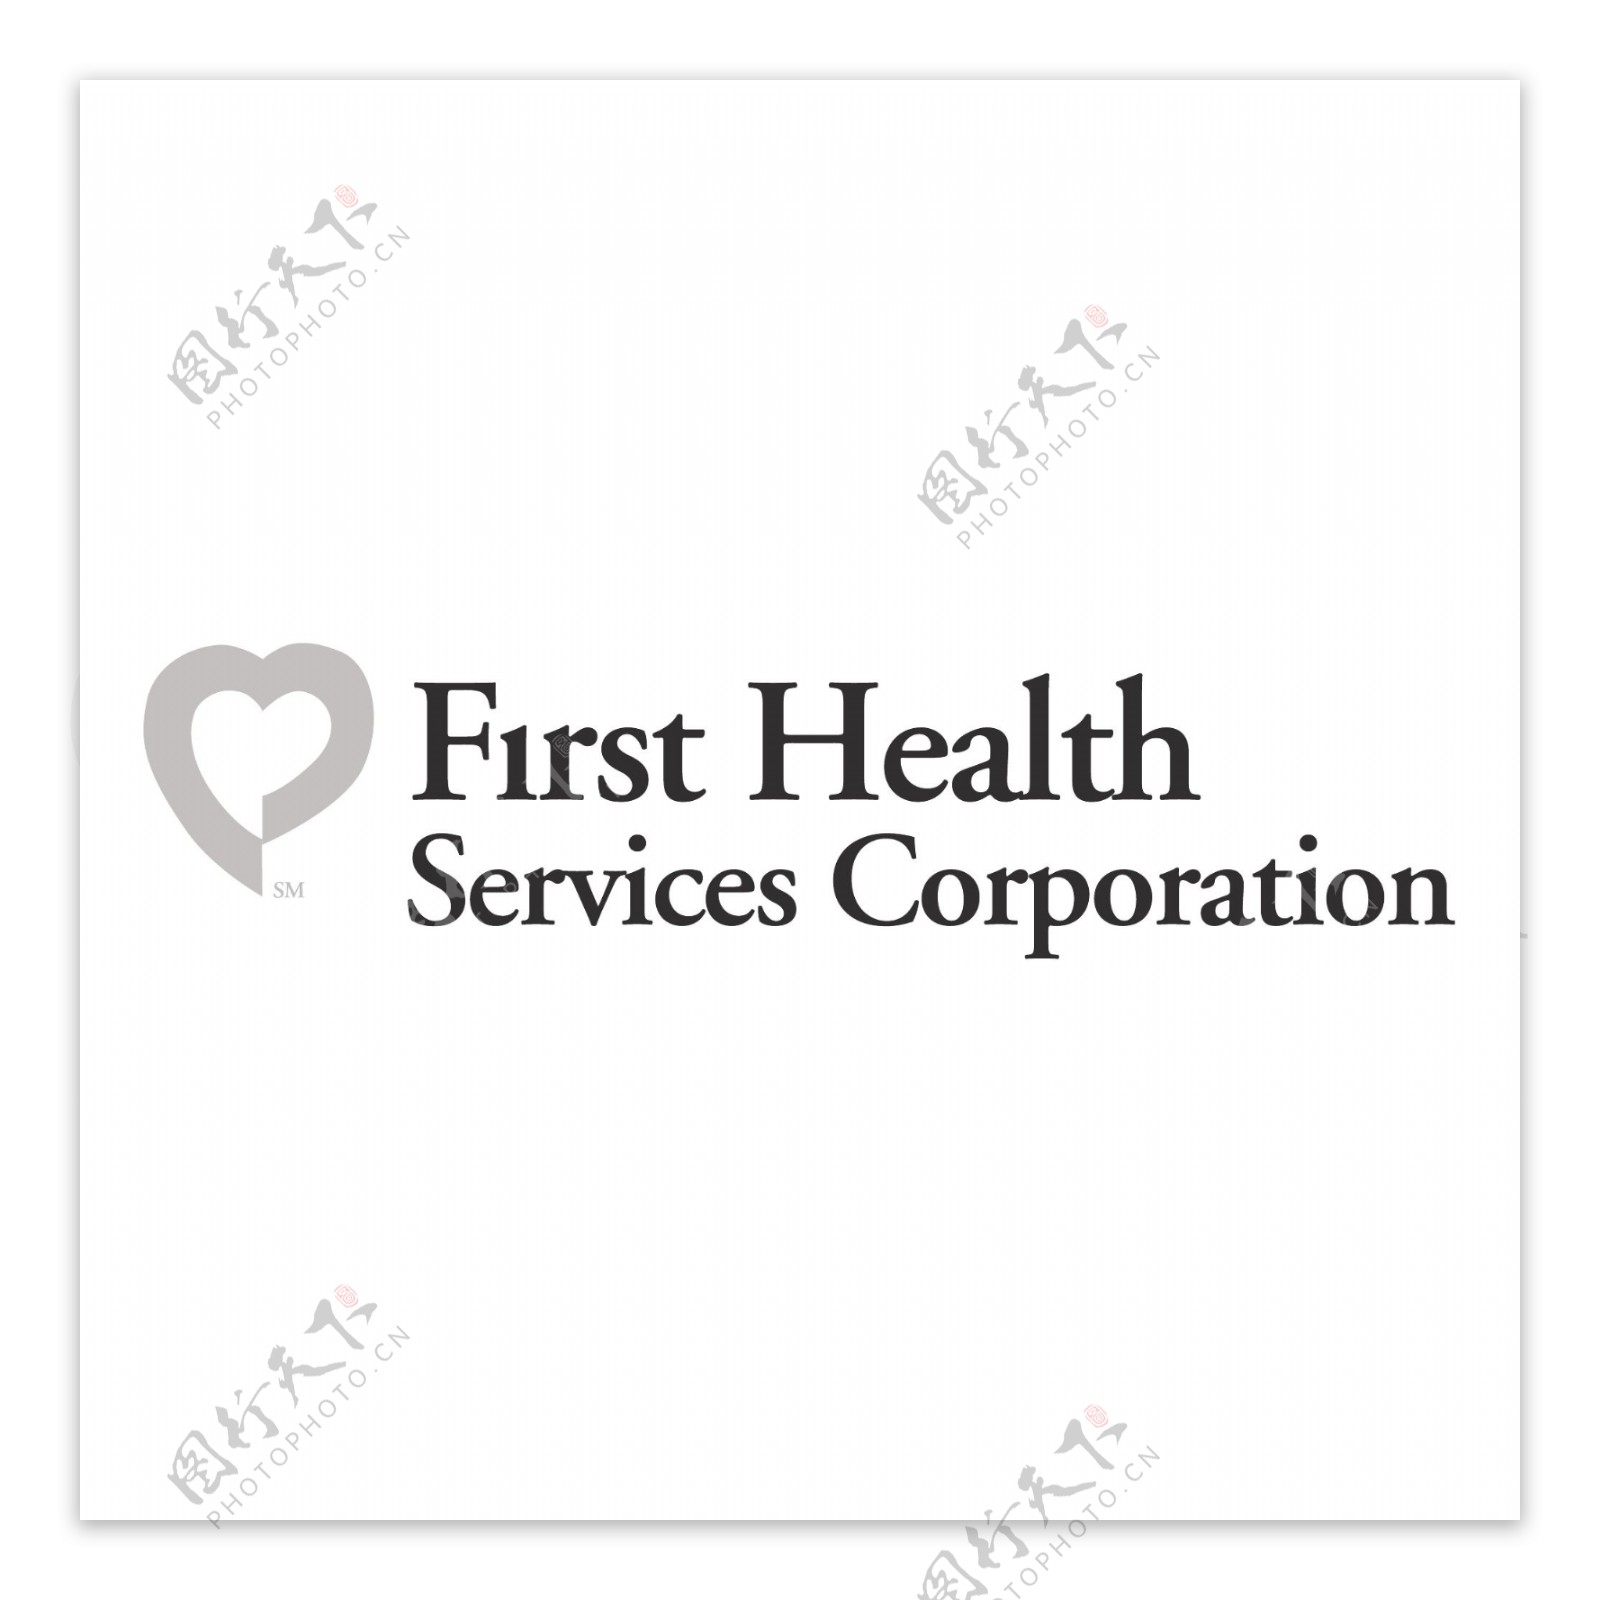 第一次卫生服务公司